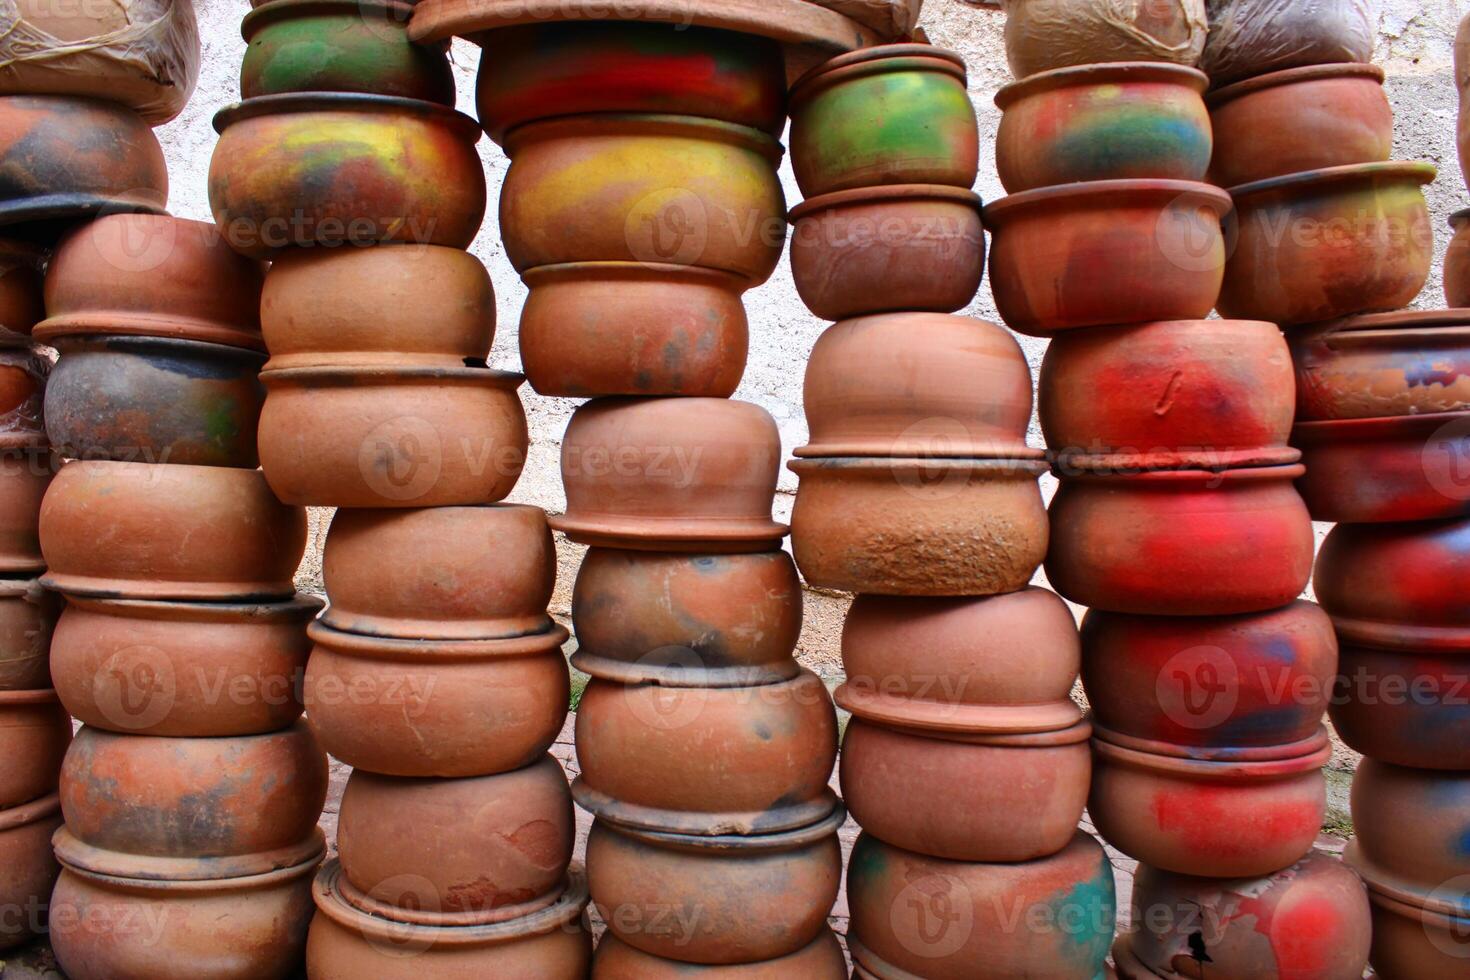 une cruche est une poterie récipient parfois utilisé pour nourriture et eau, synonyme avec le mot pot, et parfois utilisé pour produits chimiques. Avanos, nevsehir photo